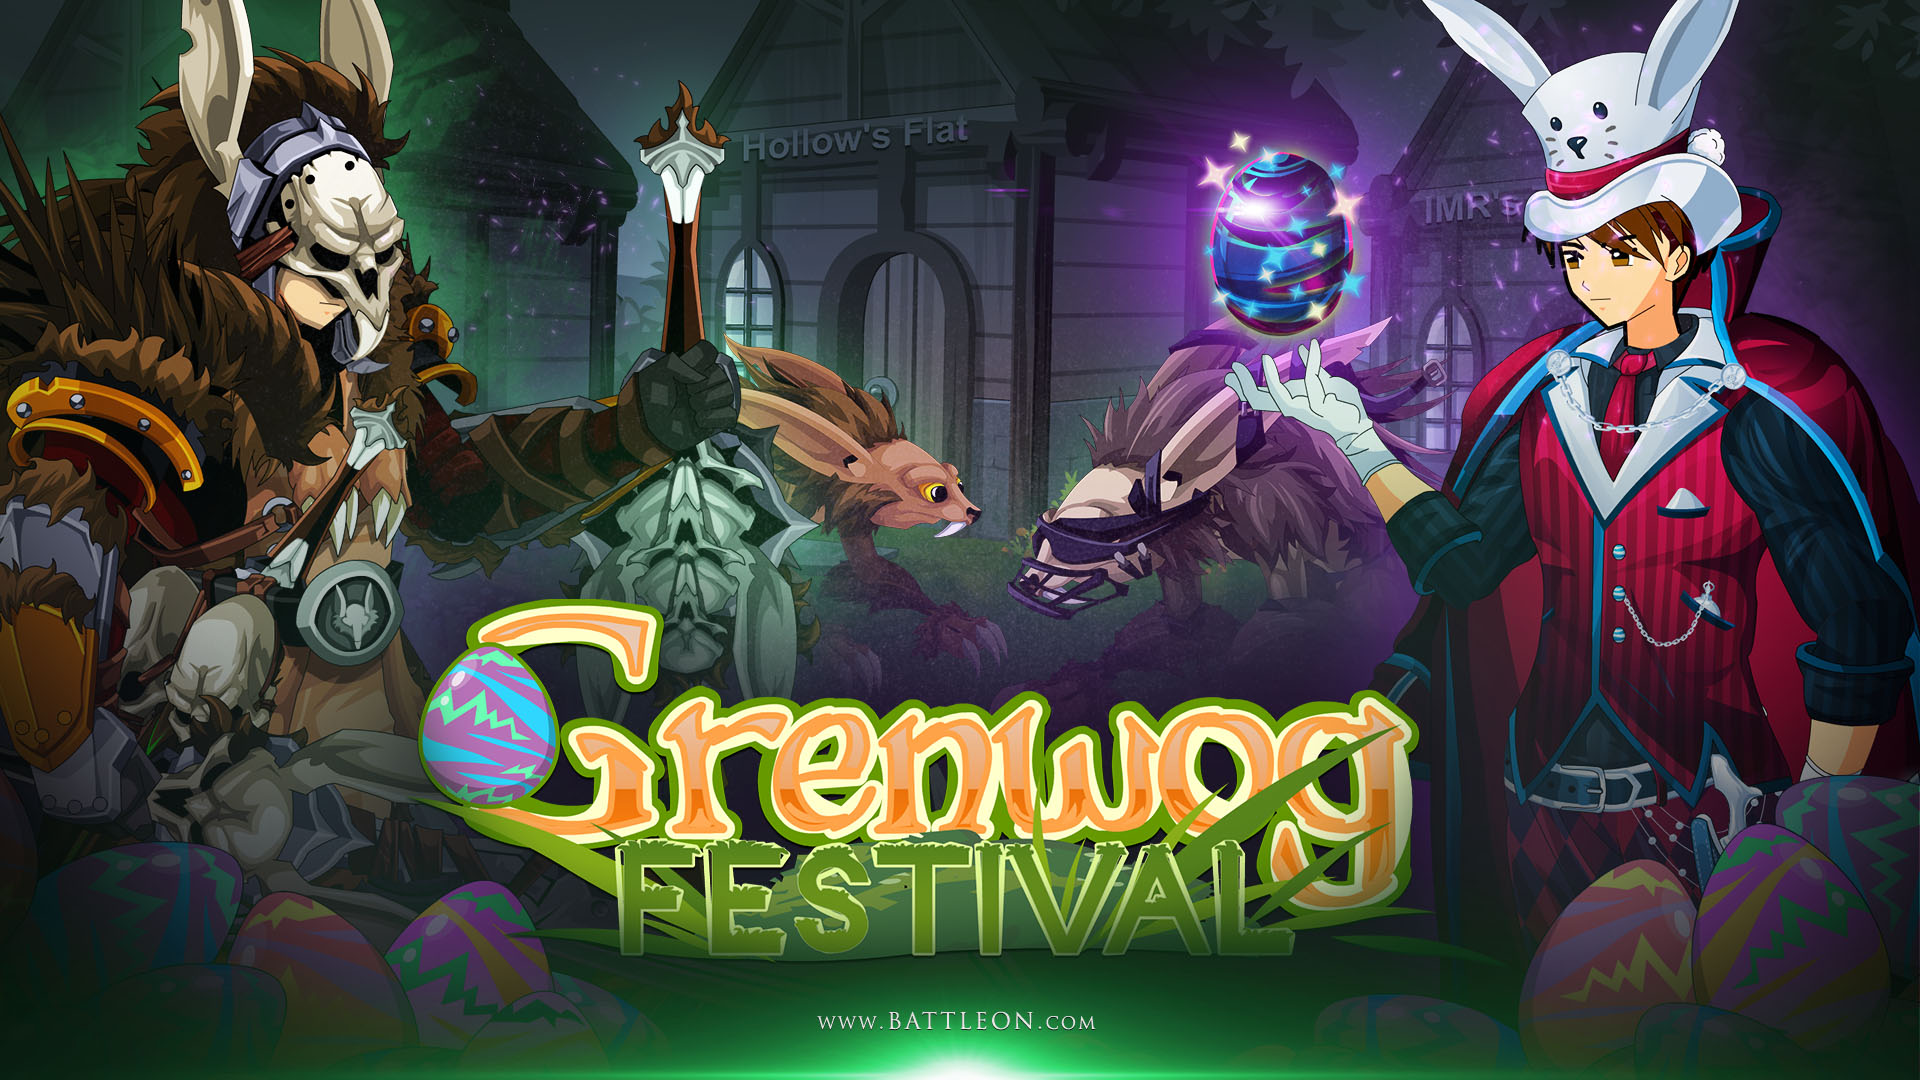 Grenwog Festival Limited-Time Shop + The Doomlight Returns on